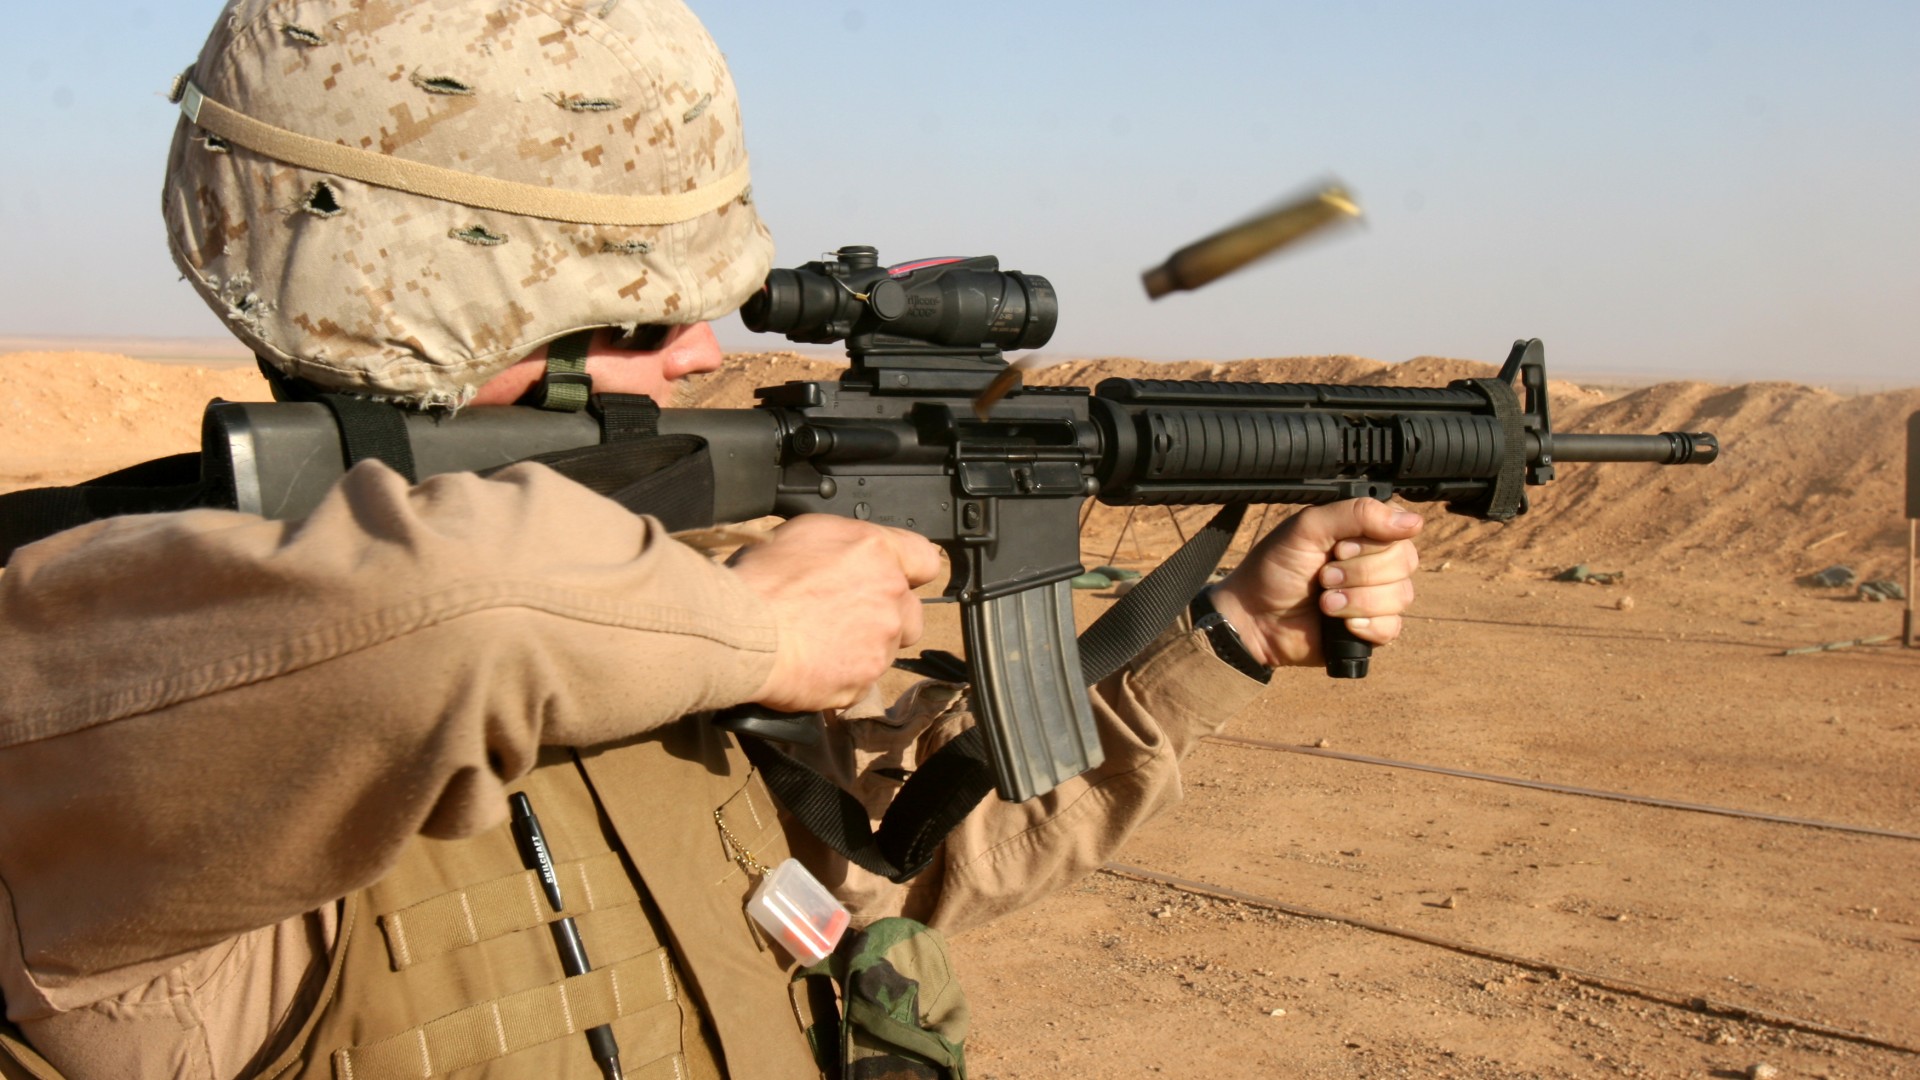 M16 rifle, U.S. Marine, M16A1, M4A1, U.S. Army, soldier, firing, desert (horizontal)